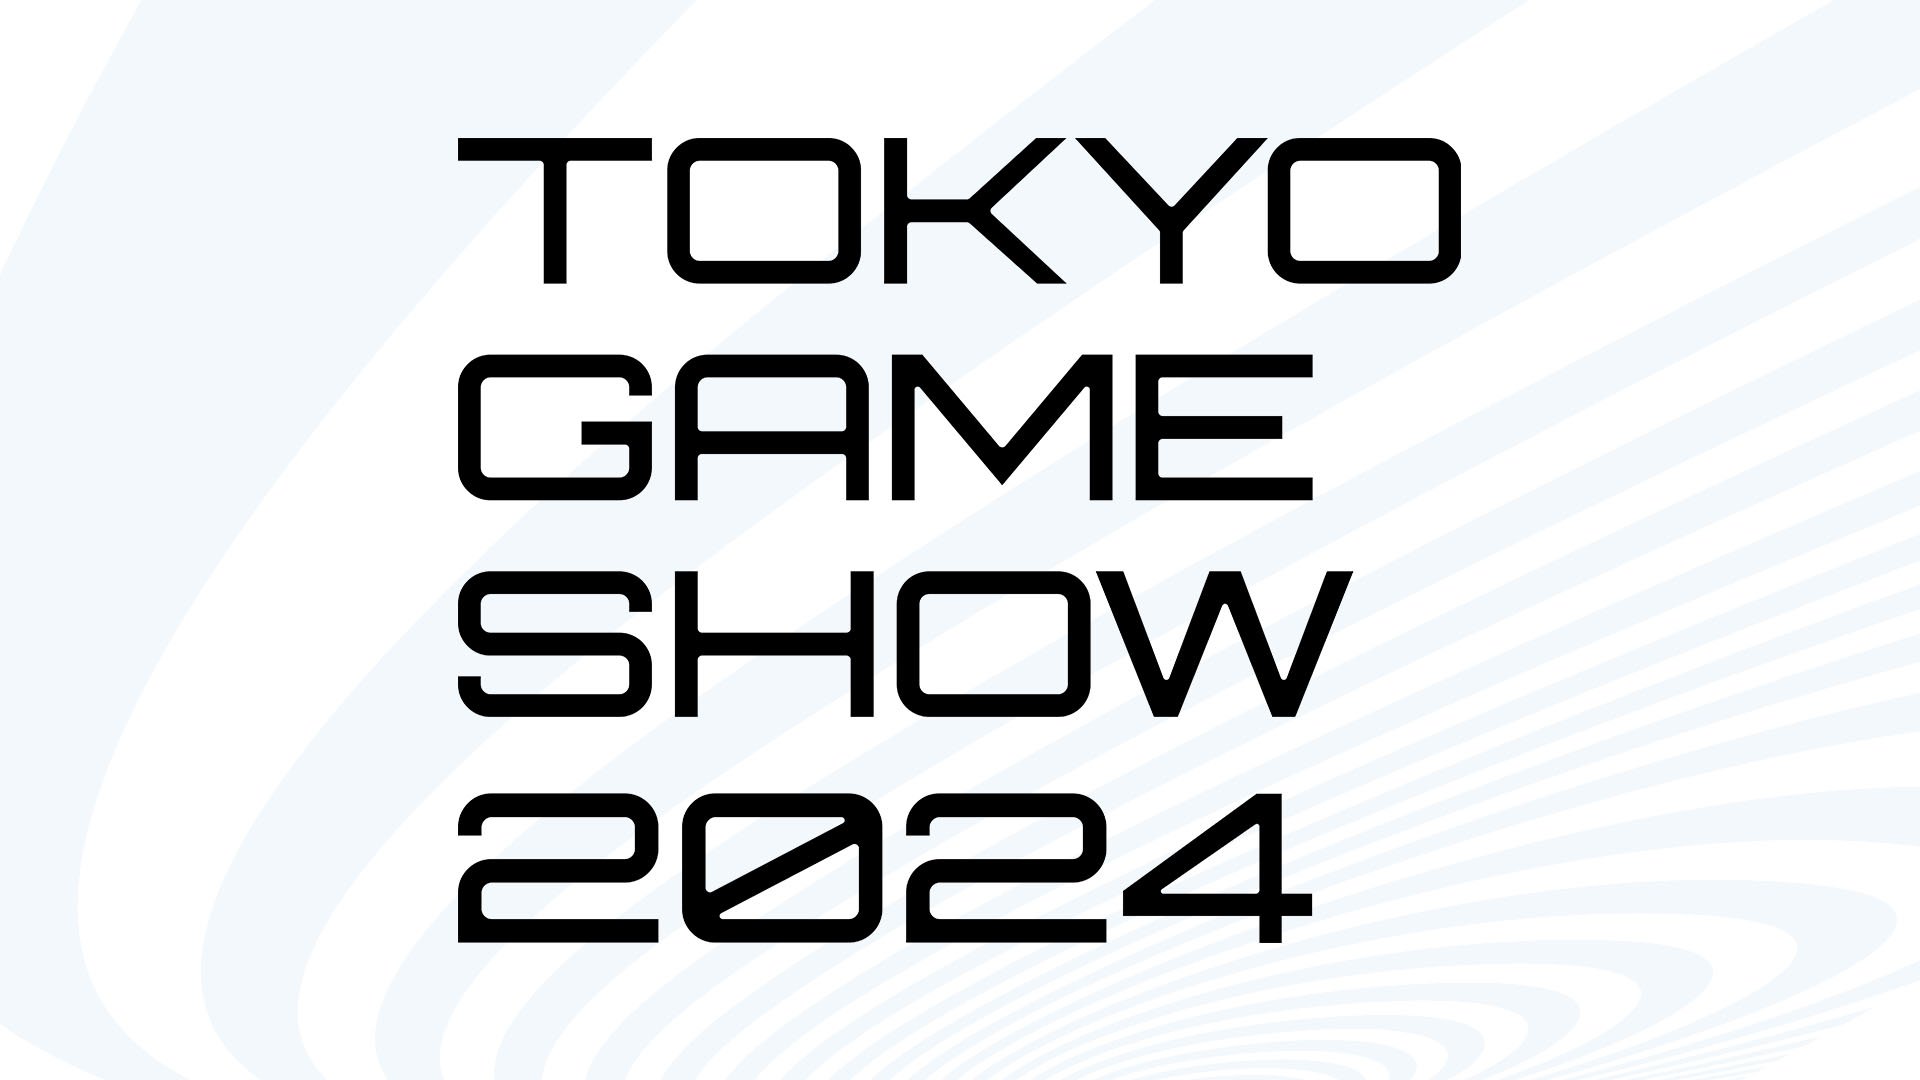 زمان برگزاری Tokyo Game Show اعلام شد